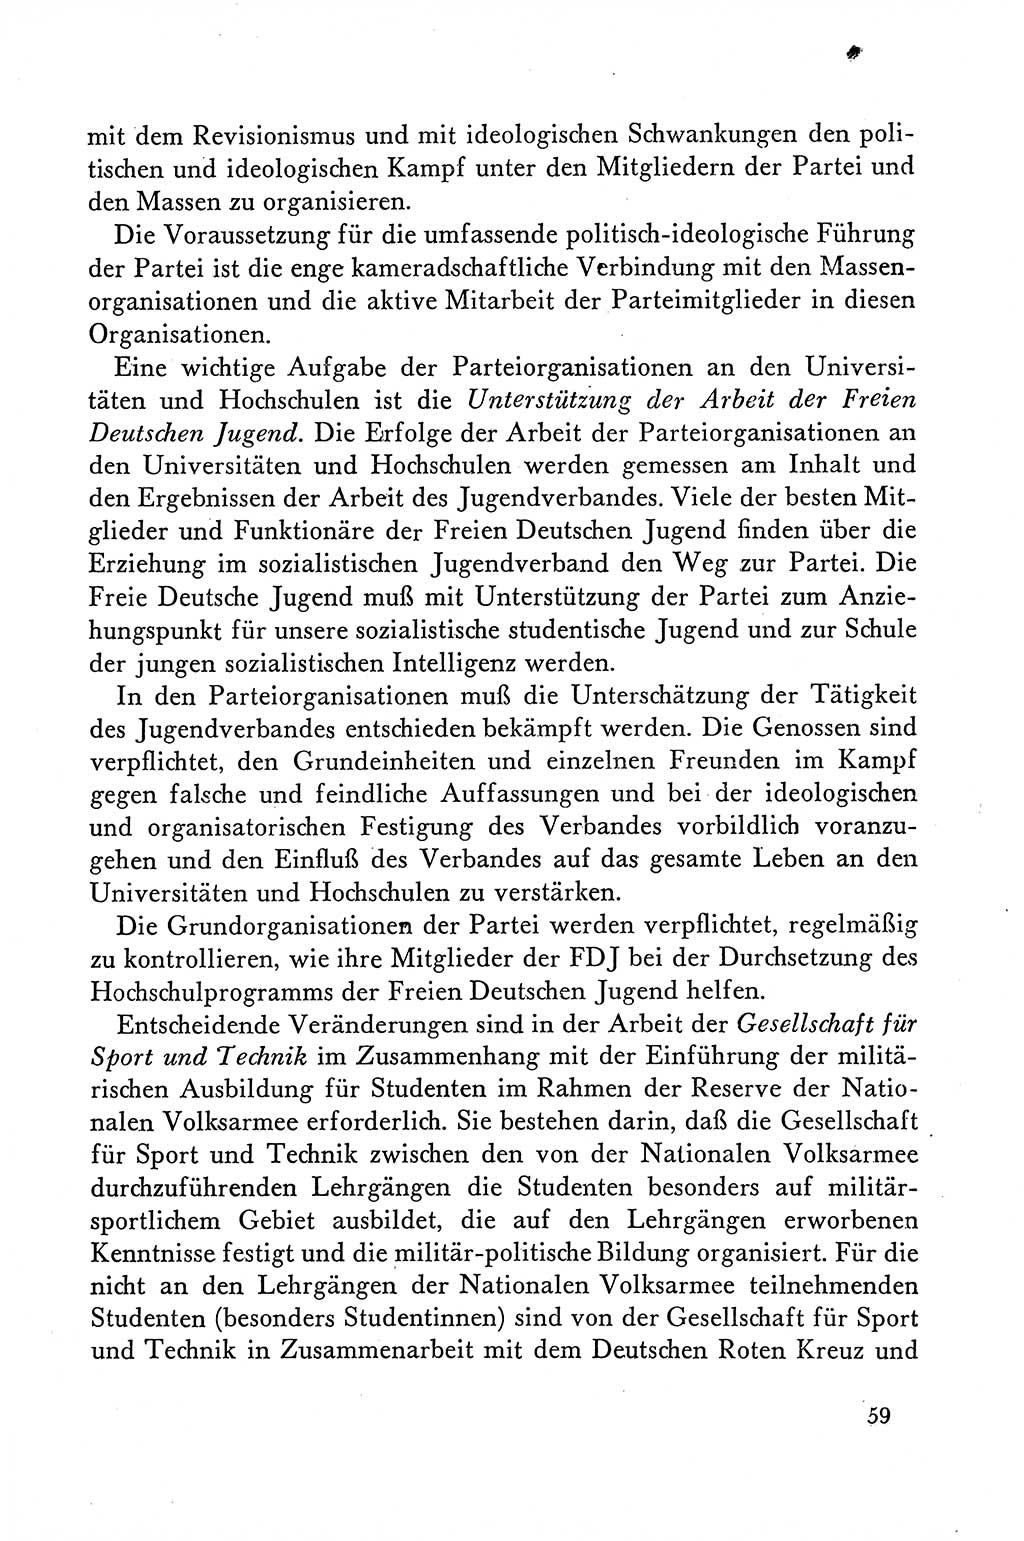 Dokumente der Sozialistischen Einheitspartei Deutschlands (SED) [Deutsche Demokratische Republik (DDR)] 1958-1959, Seite 59 (Dok. SED DDR 1958-1959, S. 59)